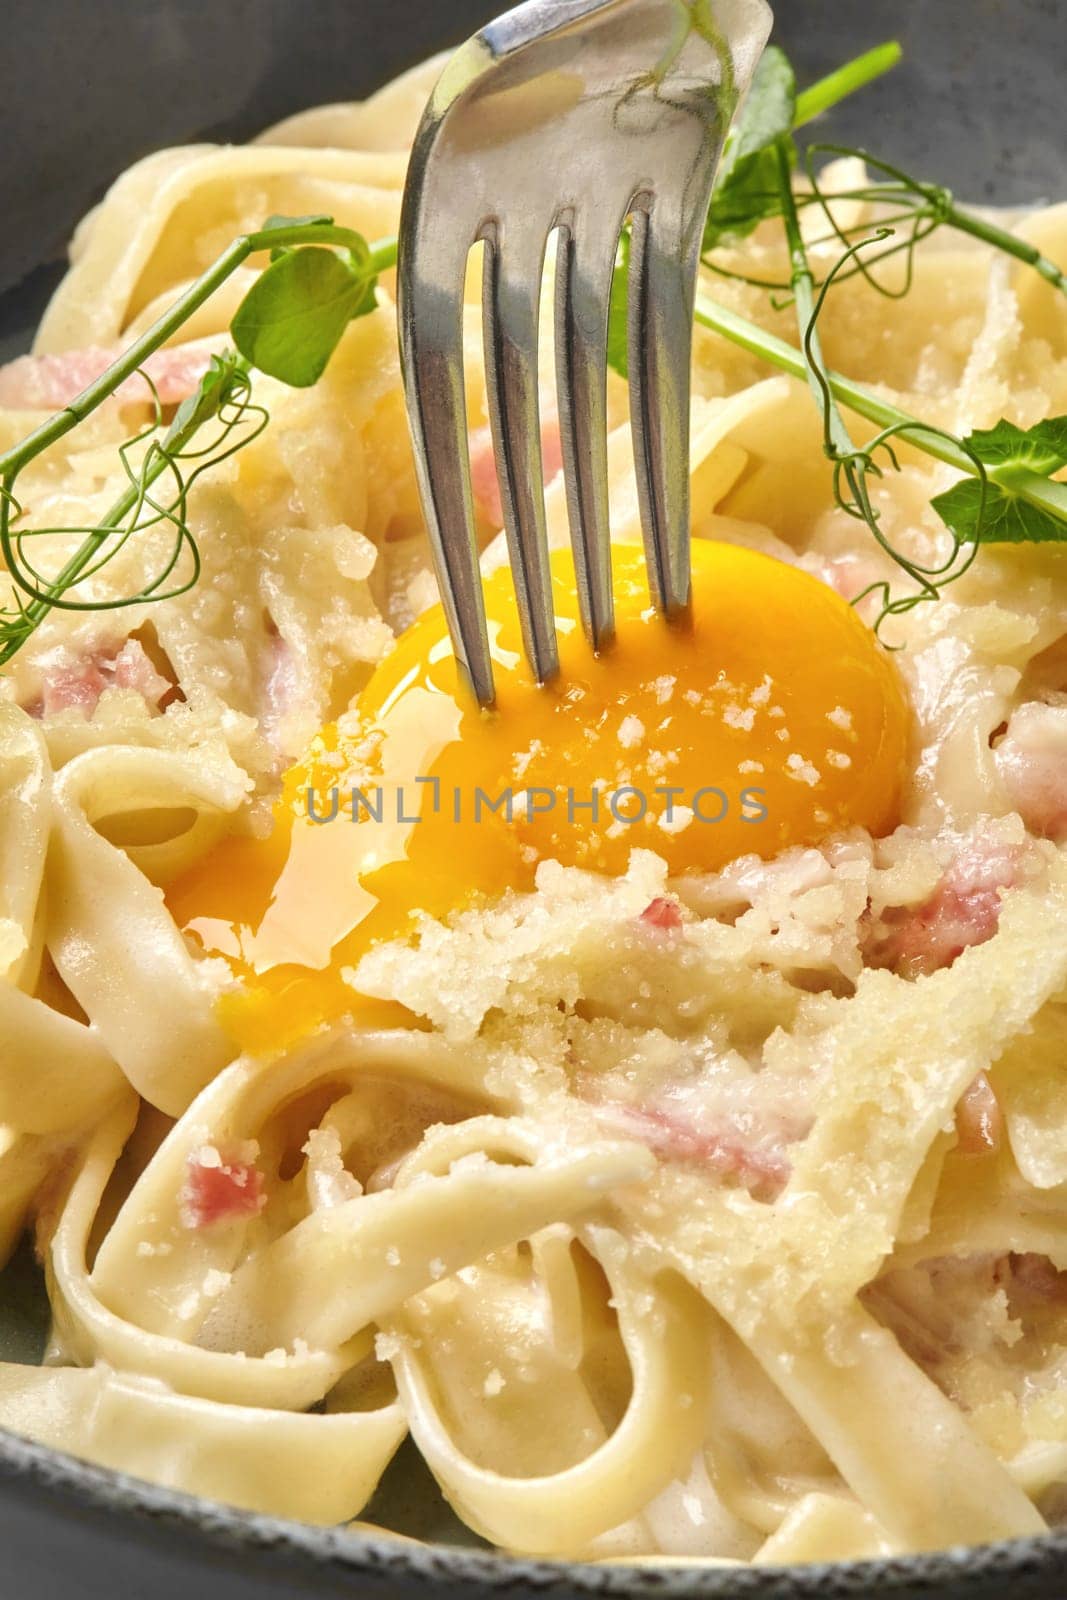 Fork breaking golden egg yolk on carbonara pasta by nazarovsergey